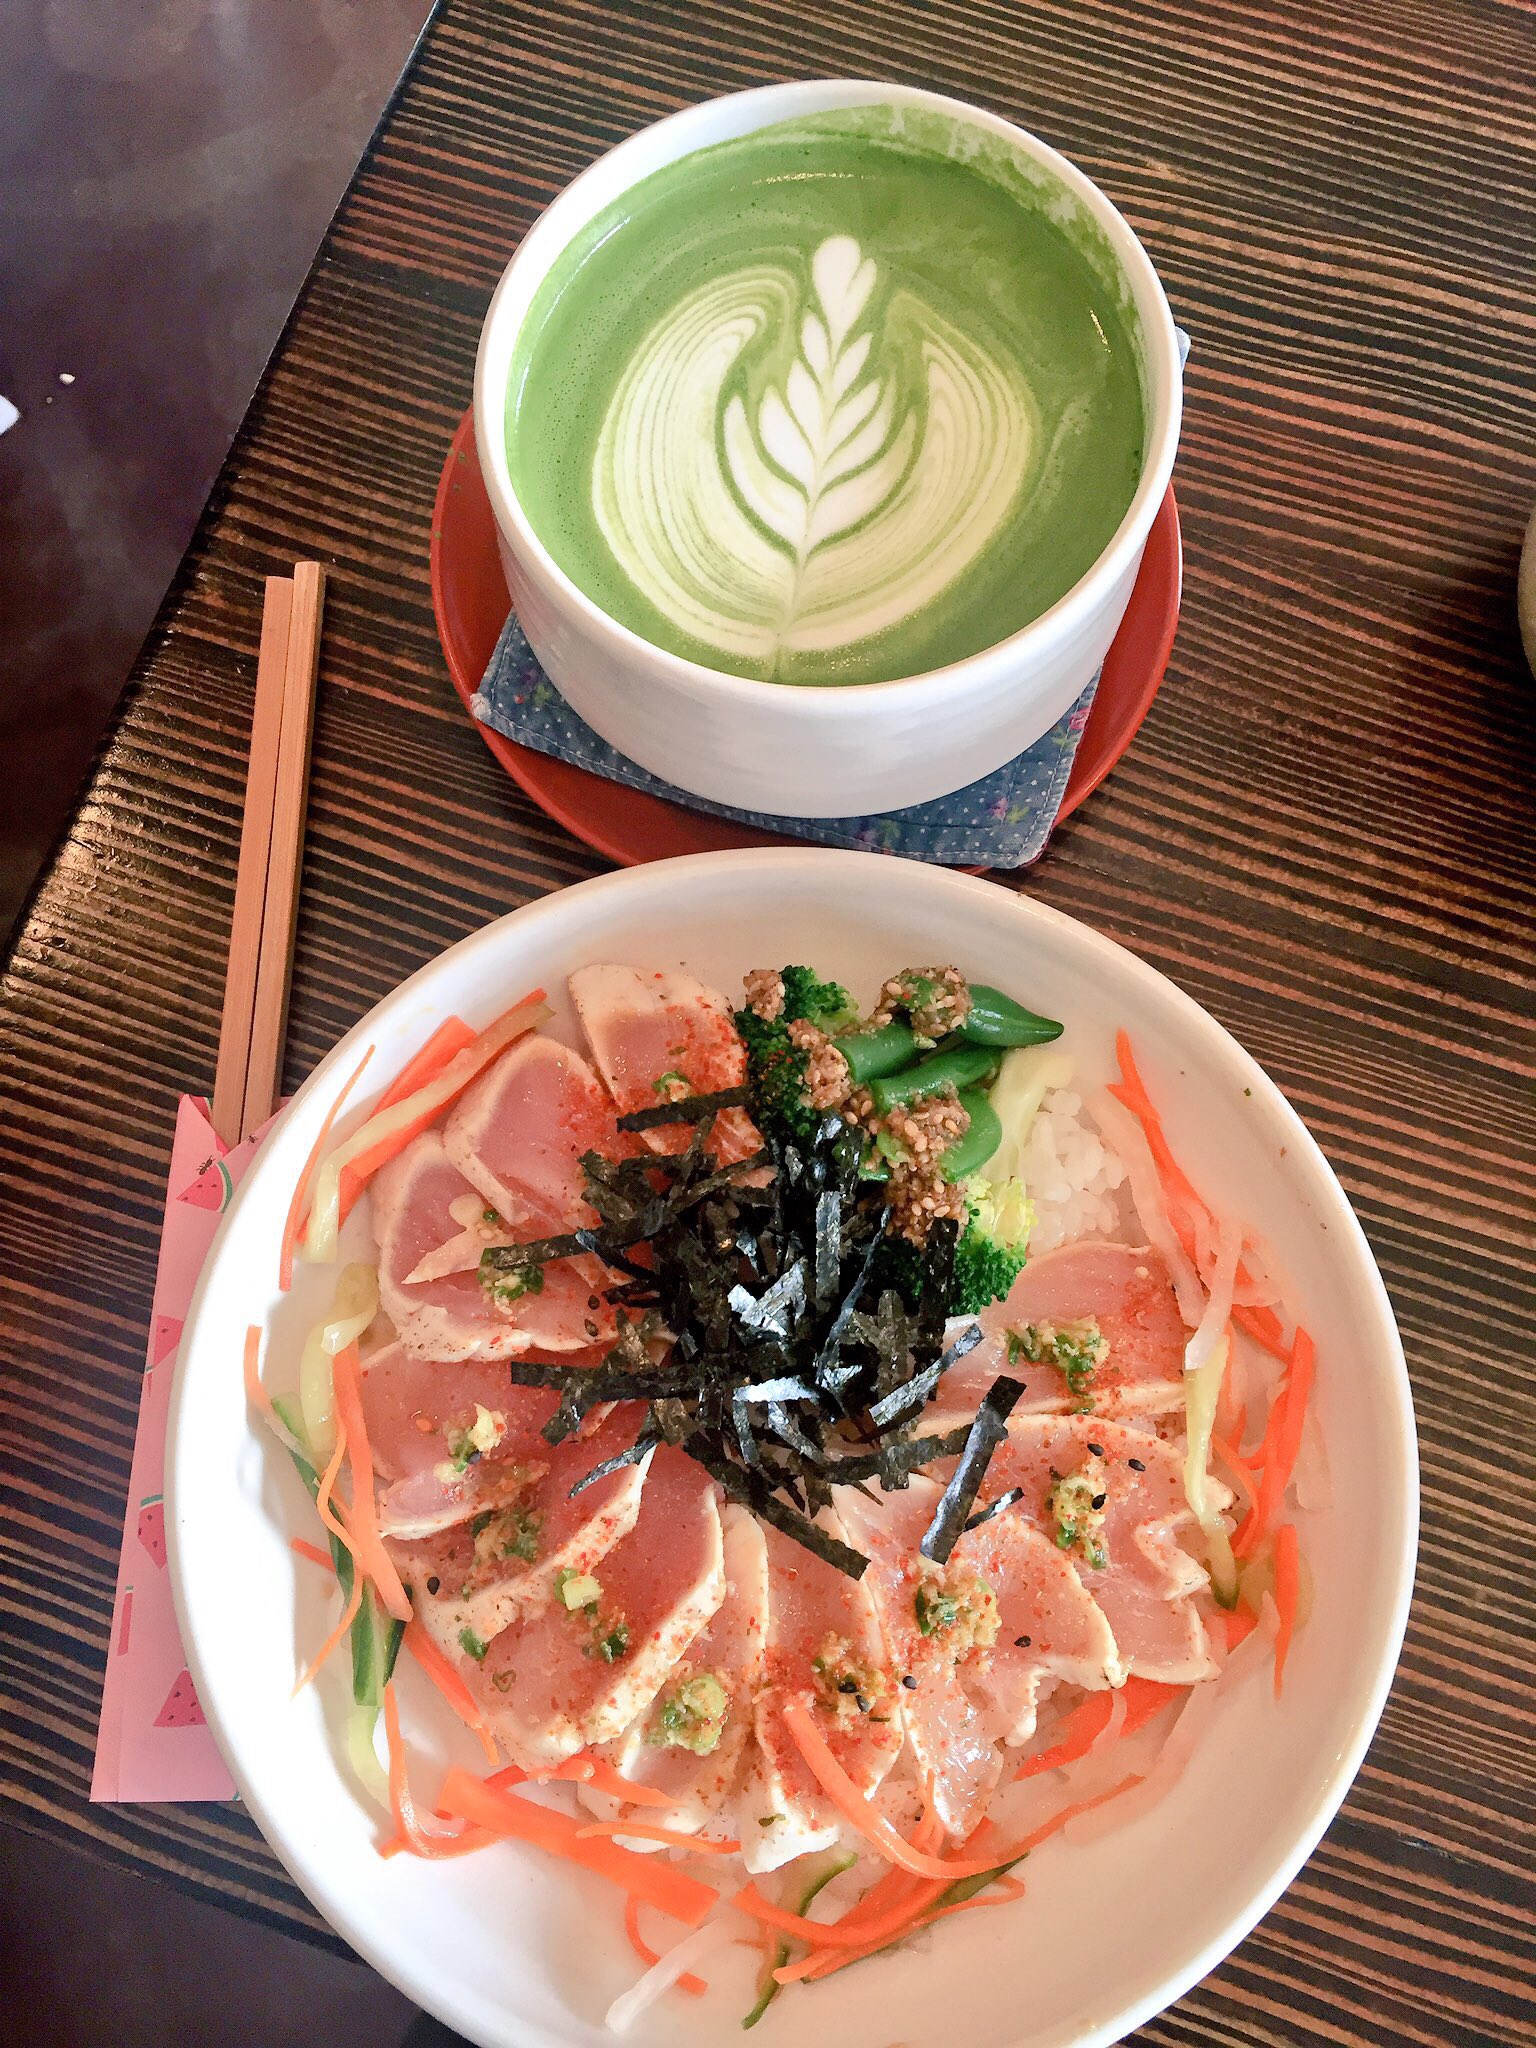 Tuna tataki and matcha latte at Basho Cafe.